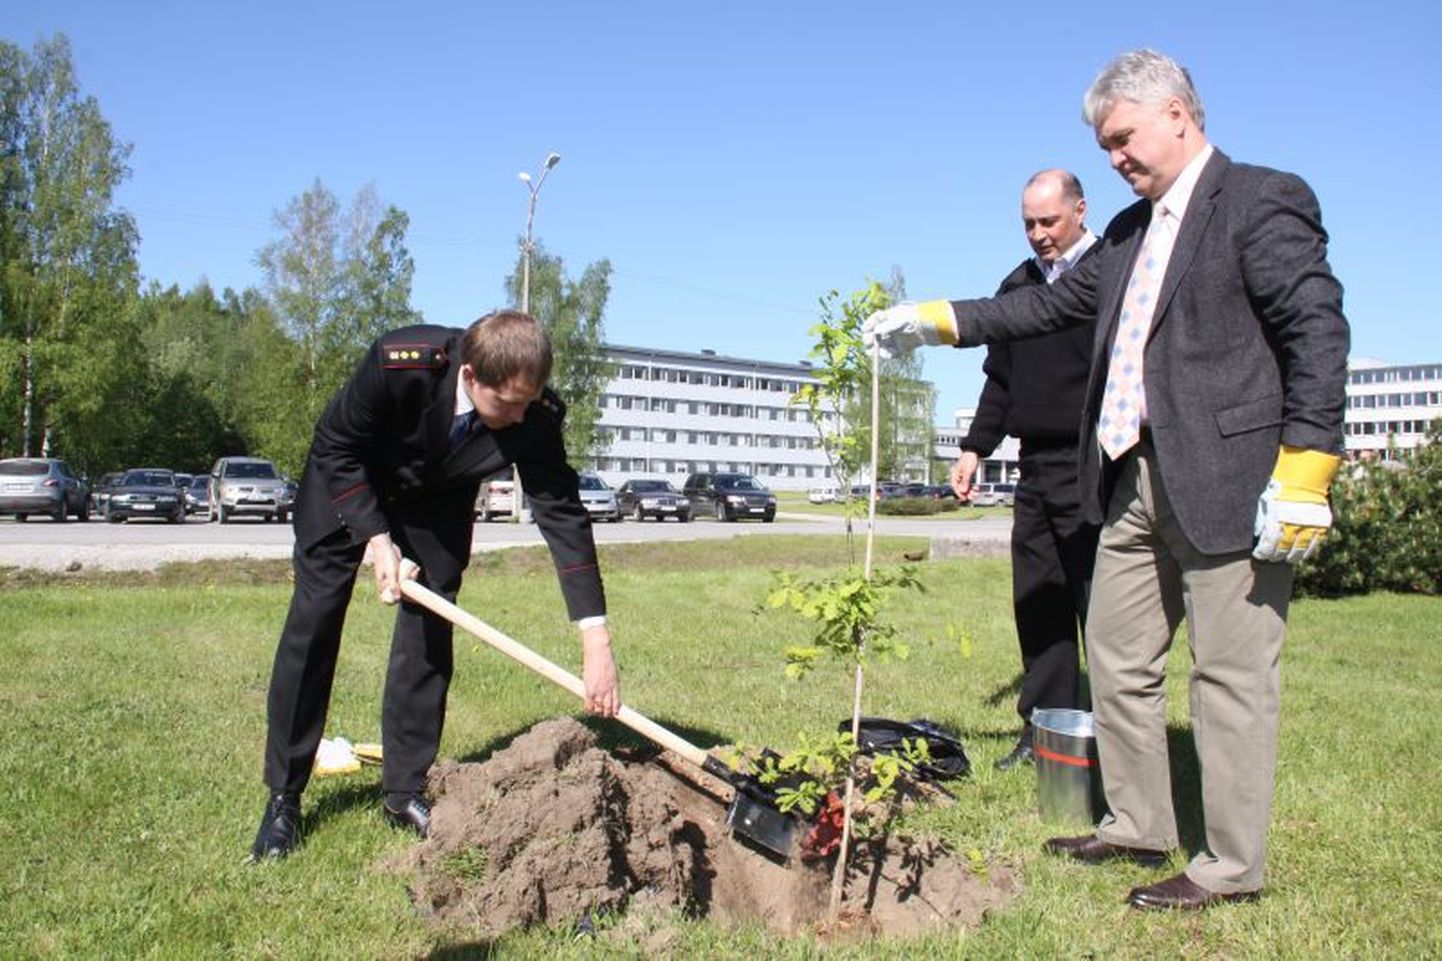 Эрик Вяли посадил молодое деревце в день 65-летия горноспасательного отряда Eesti Enhgia kaevandused.